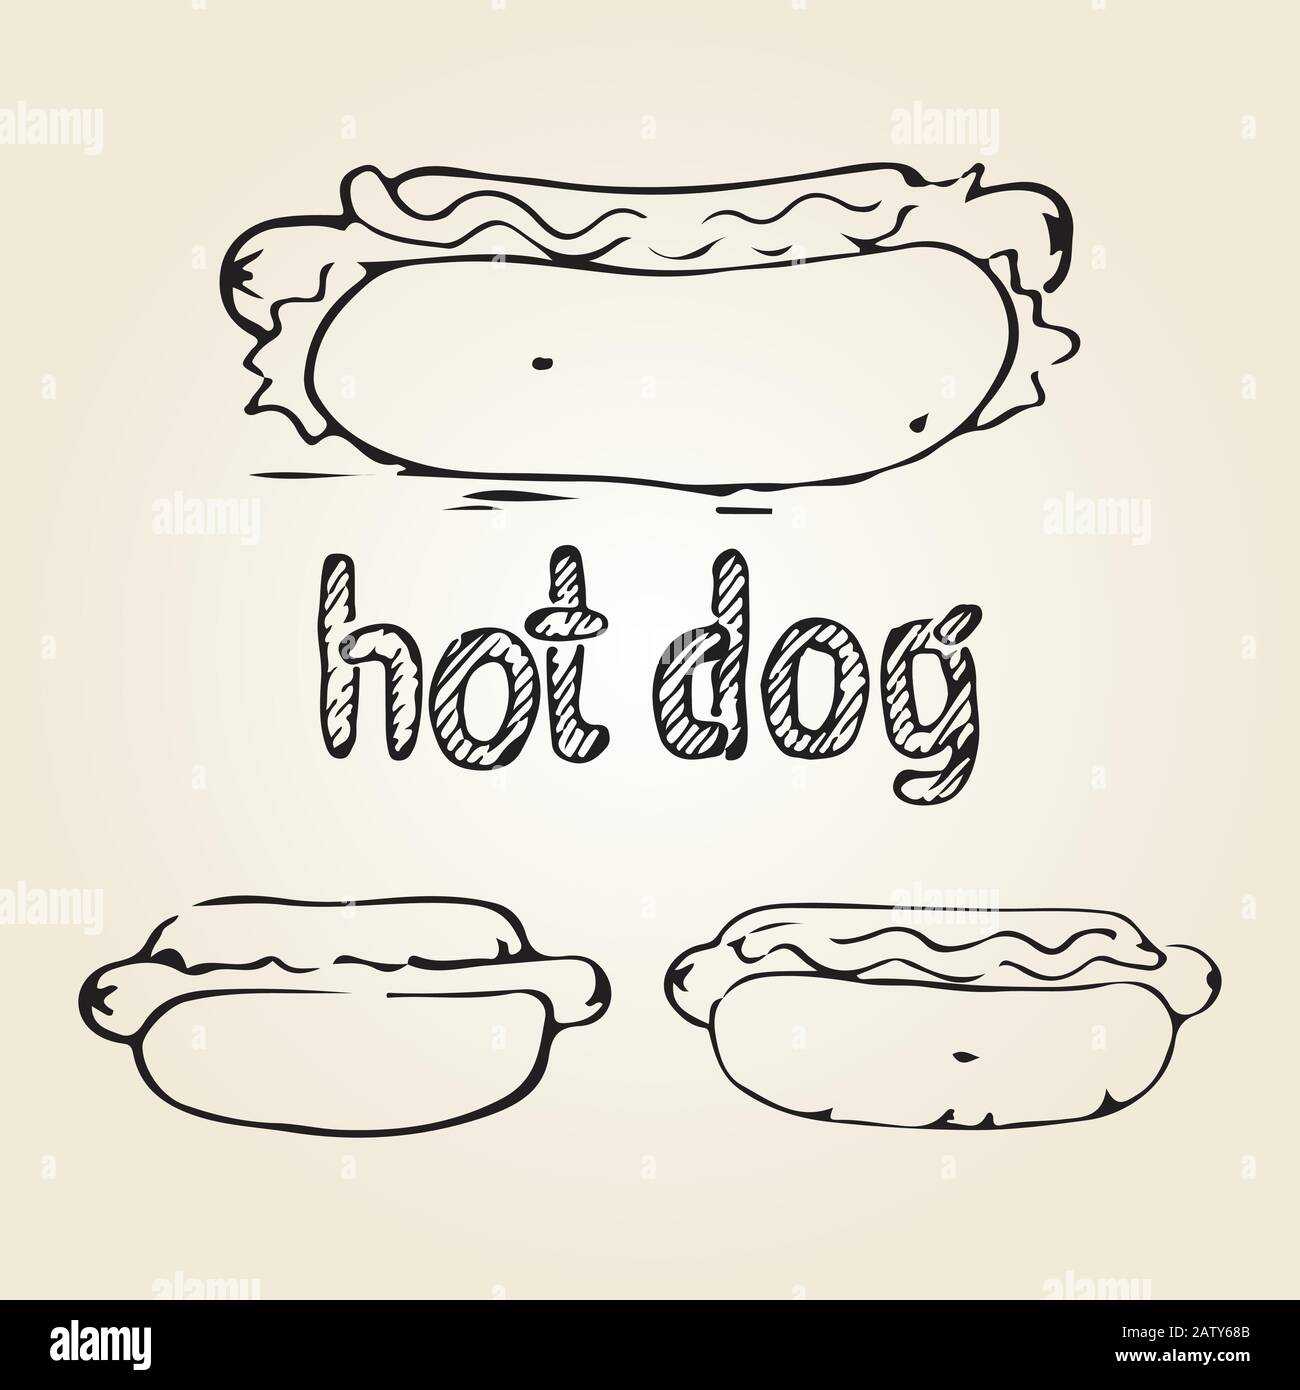 Handzeichnung mit heißem Hund. Fast-Food-Designelemente, Skizze von Hotdogs und handgeschriebenes Etikett. Monochrome EPS8-Vektorgrafiken. Stock Vektor